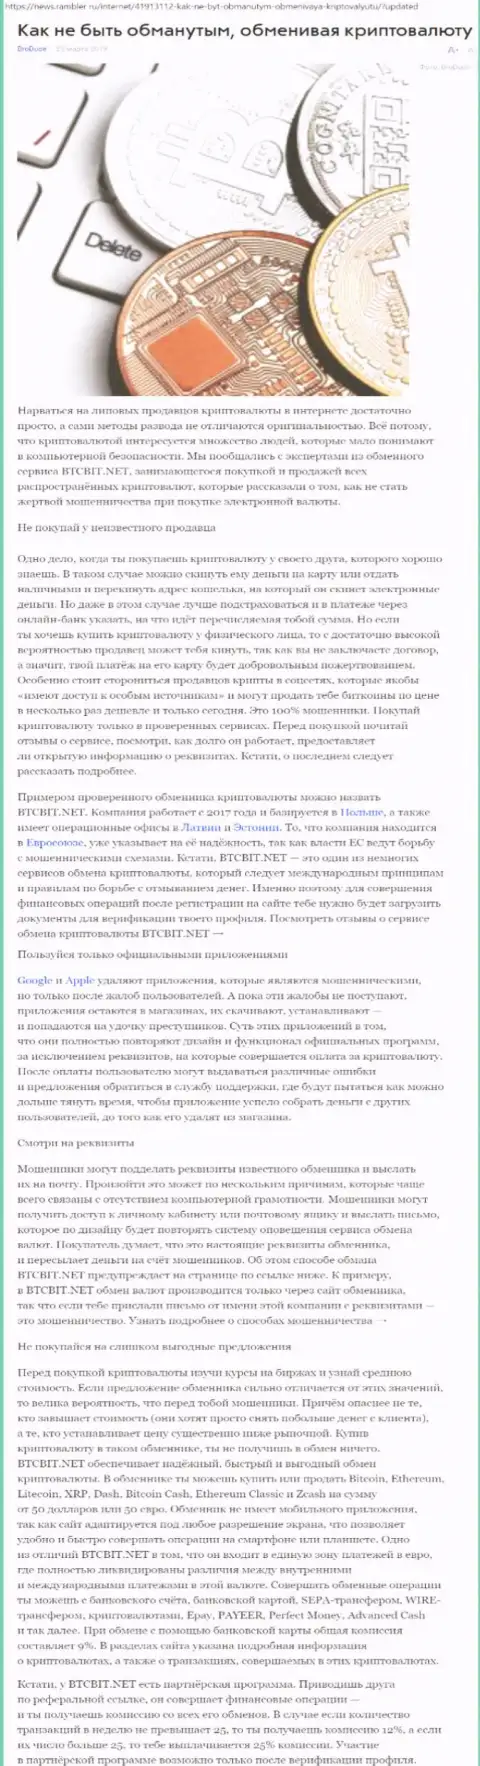 Публикация об организации BTCBIT Sp. z.o.o. на news rambler ru